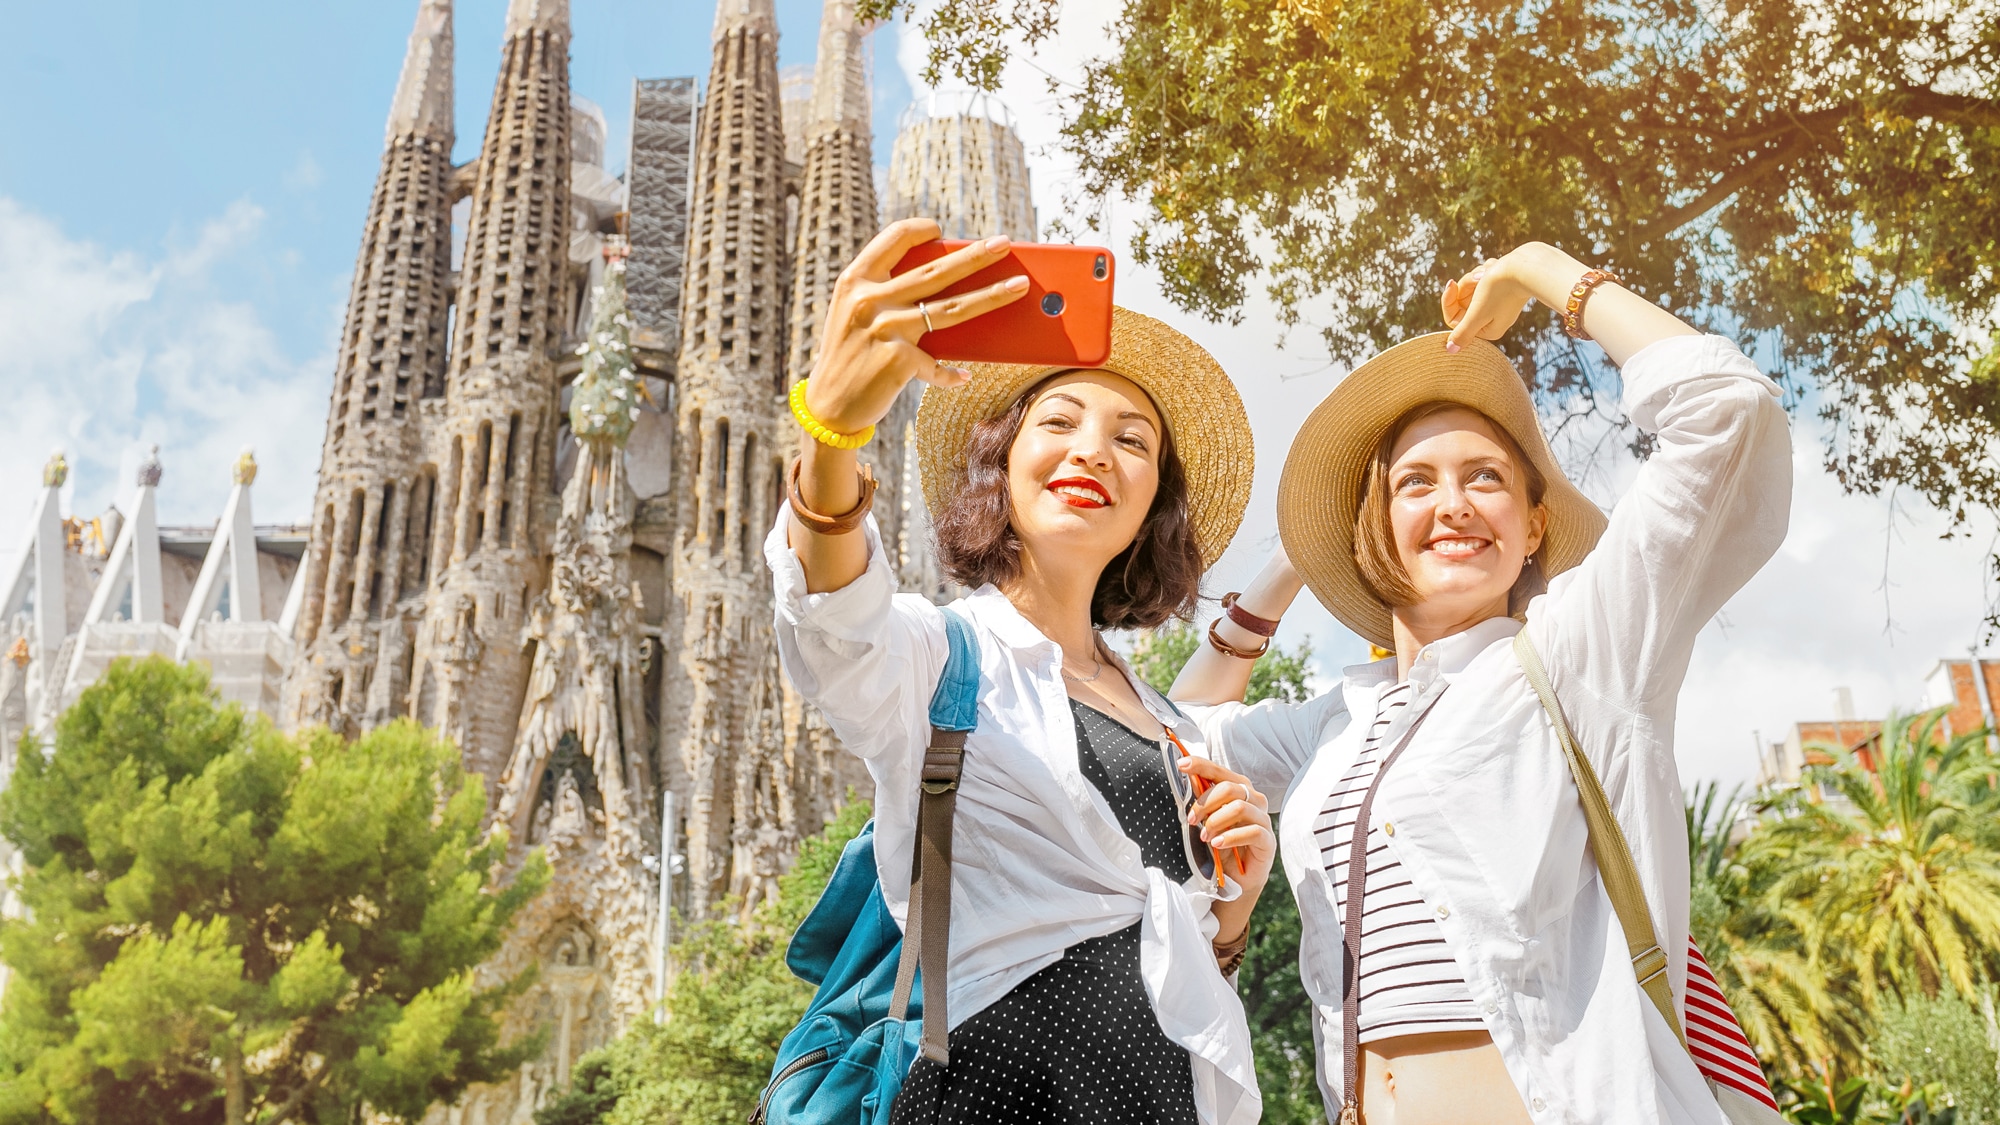 バルセロナの聖十字架と聖エウラリア大聖堂の前で自撮りする 2 人の女性